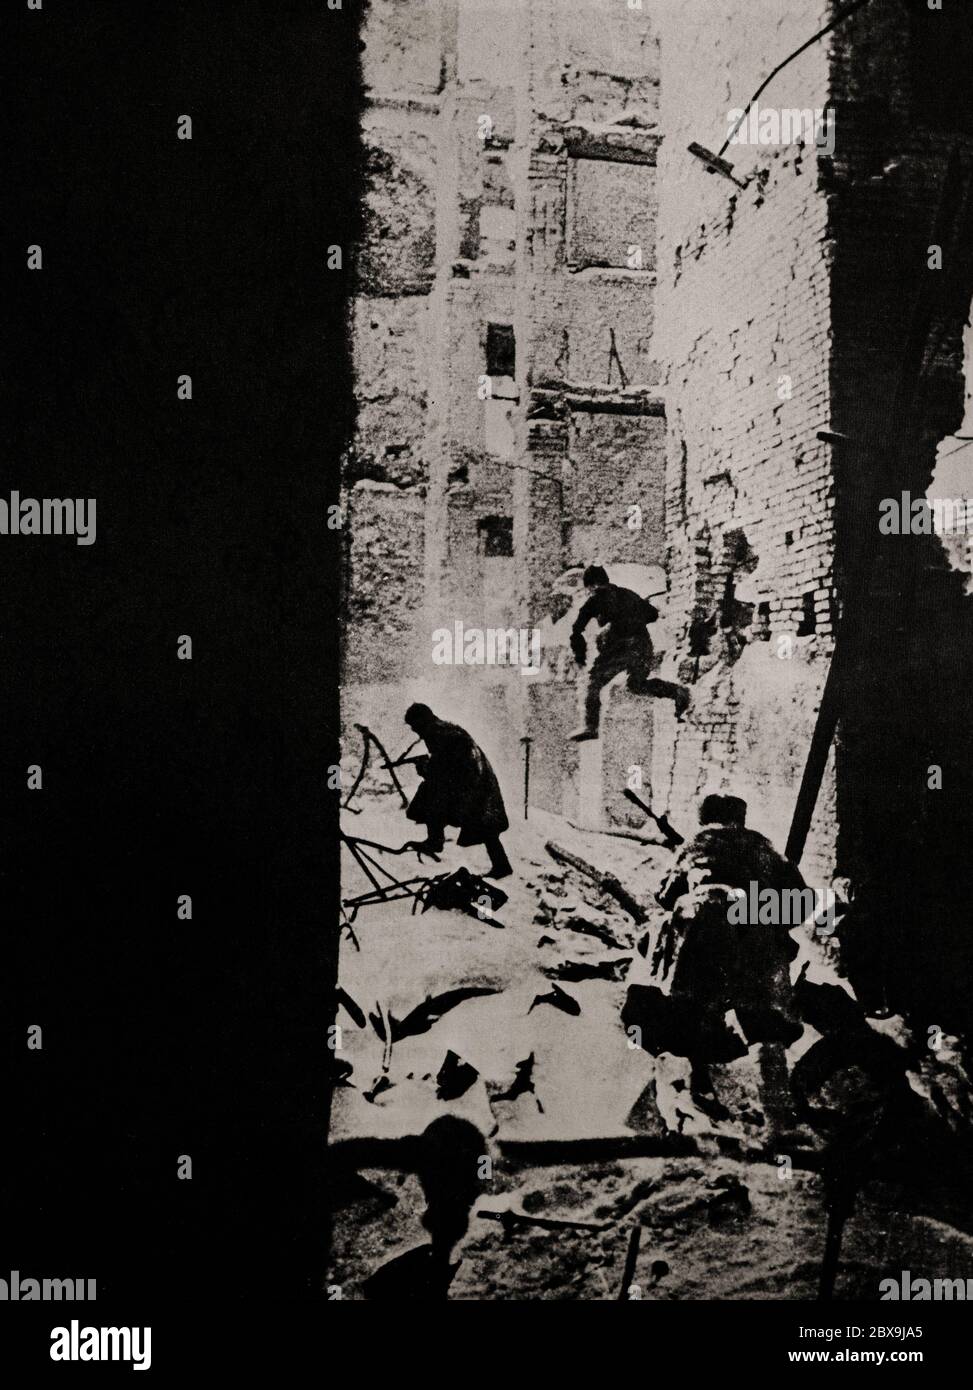 Russische Soldaten in Haus zu Haus kämpfen während der Schlacht von Stalingrad (1942-1943), als Deutschland und seine Verbündeten kämpften die Sowjetunion für die Kontrolle der Stadt Stalingrad (jetzt Wolgograd) in Südrussland. Sie war geprägt von heftigen Nahkampfkämpfen und direkten Angriffen auf Zivilisten bei Luftangriffen während einer der blutigsten Schlachten in der Geschichte der Kriegsführung, mit geschätzten 2 Millionen Todesopfern. Stockfoto